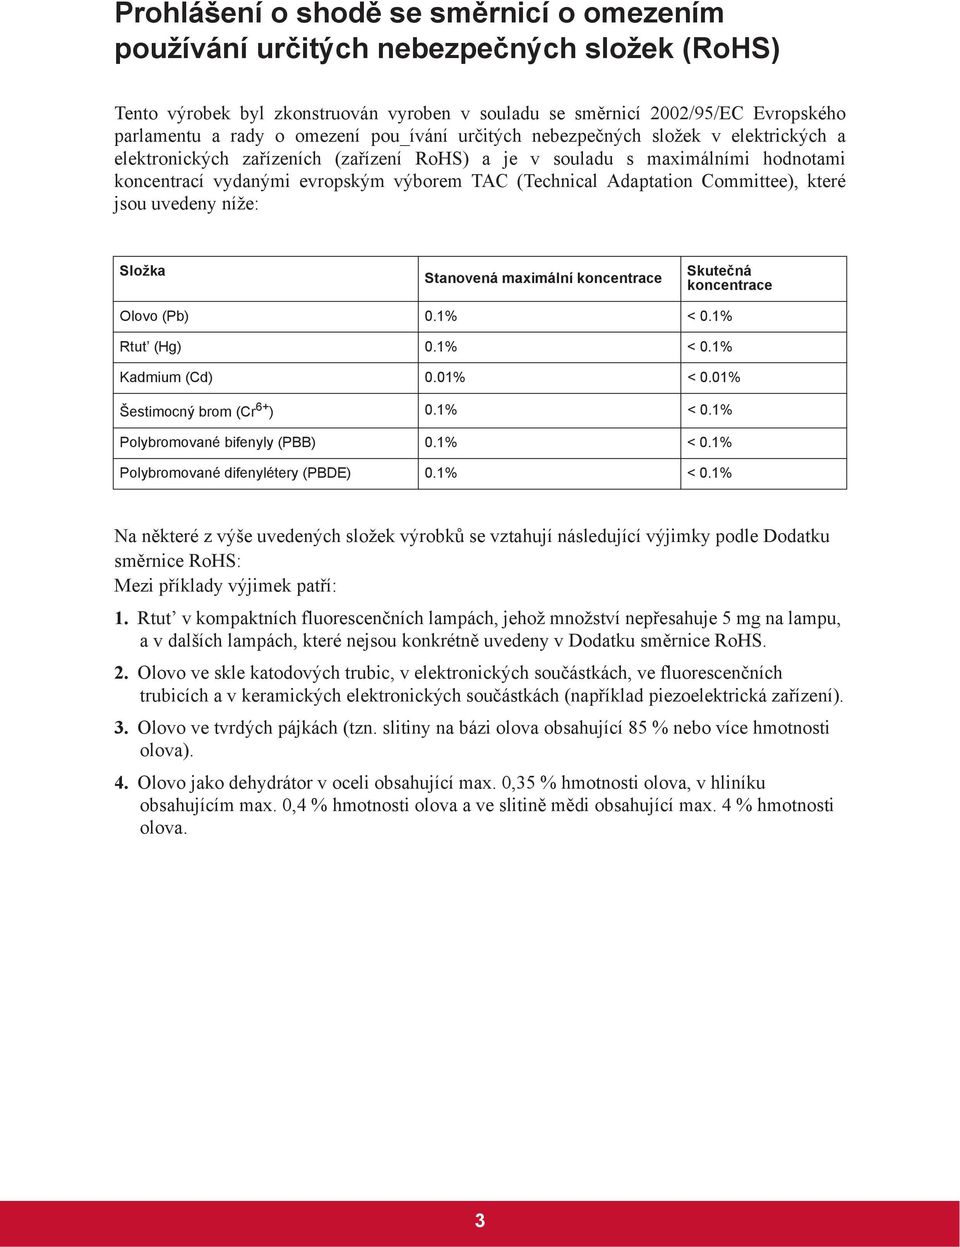 Adaptation Committee), které jsou uvedeny níže: Složka Stanovená maximální koncentrace Skute ná koncentrace Olovo (Pb) 0.1% < 0.1% Rtut (Hg) 0.1% < 0.1% Kadmium (Cd) 0.01% < 0.